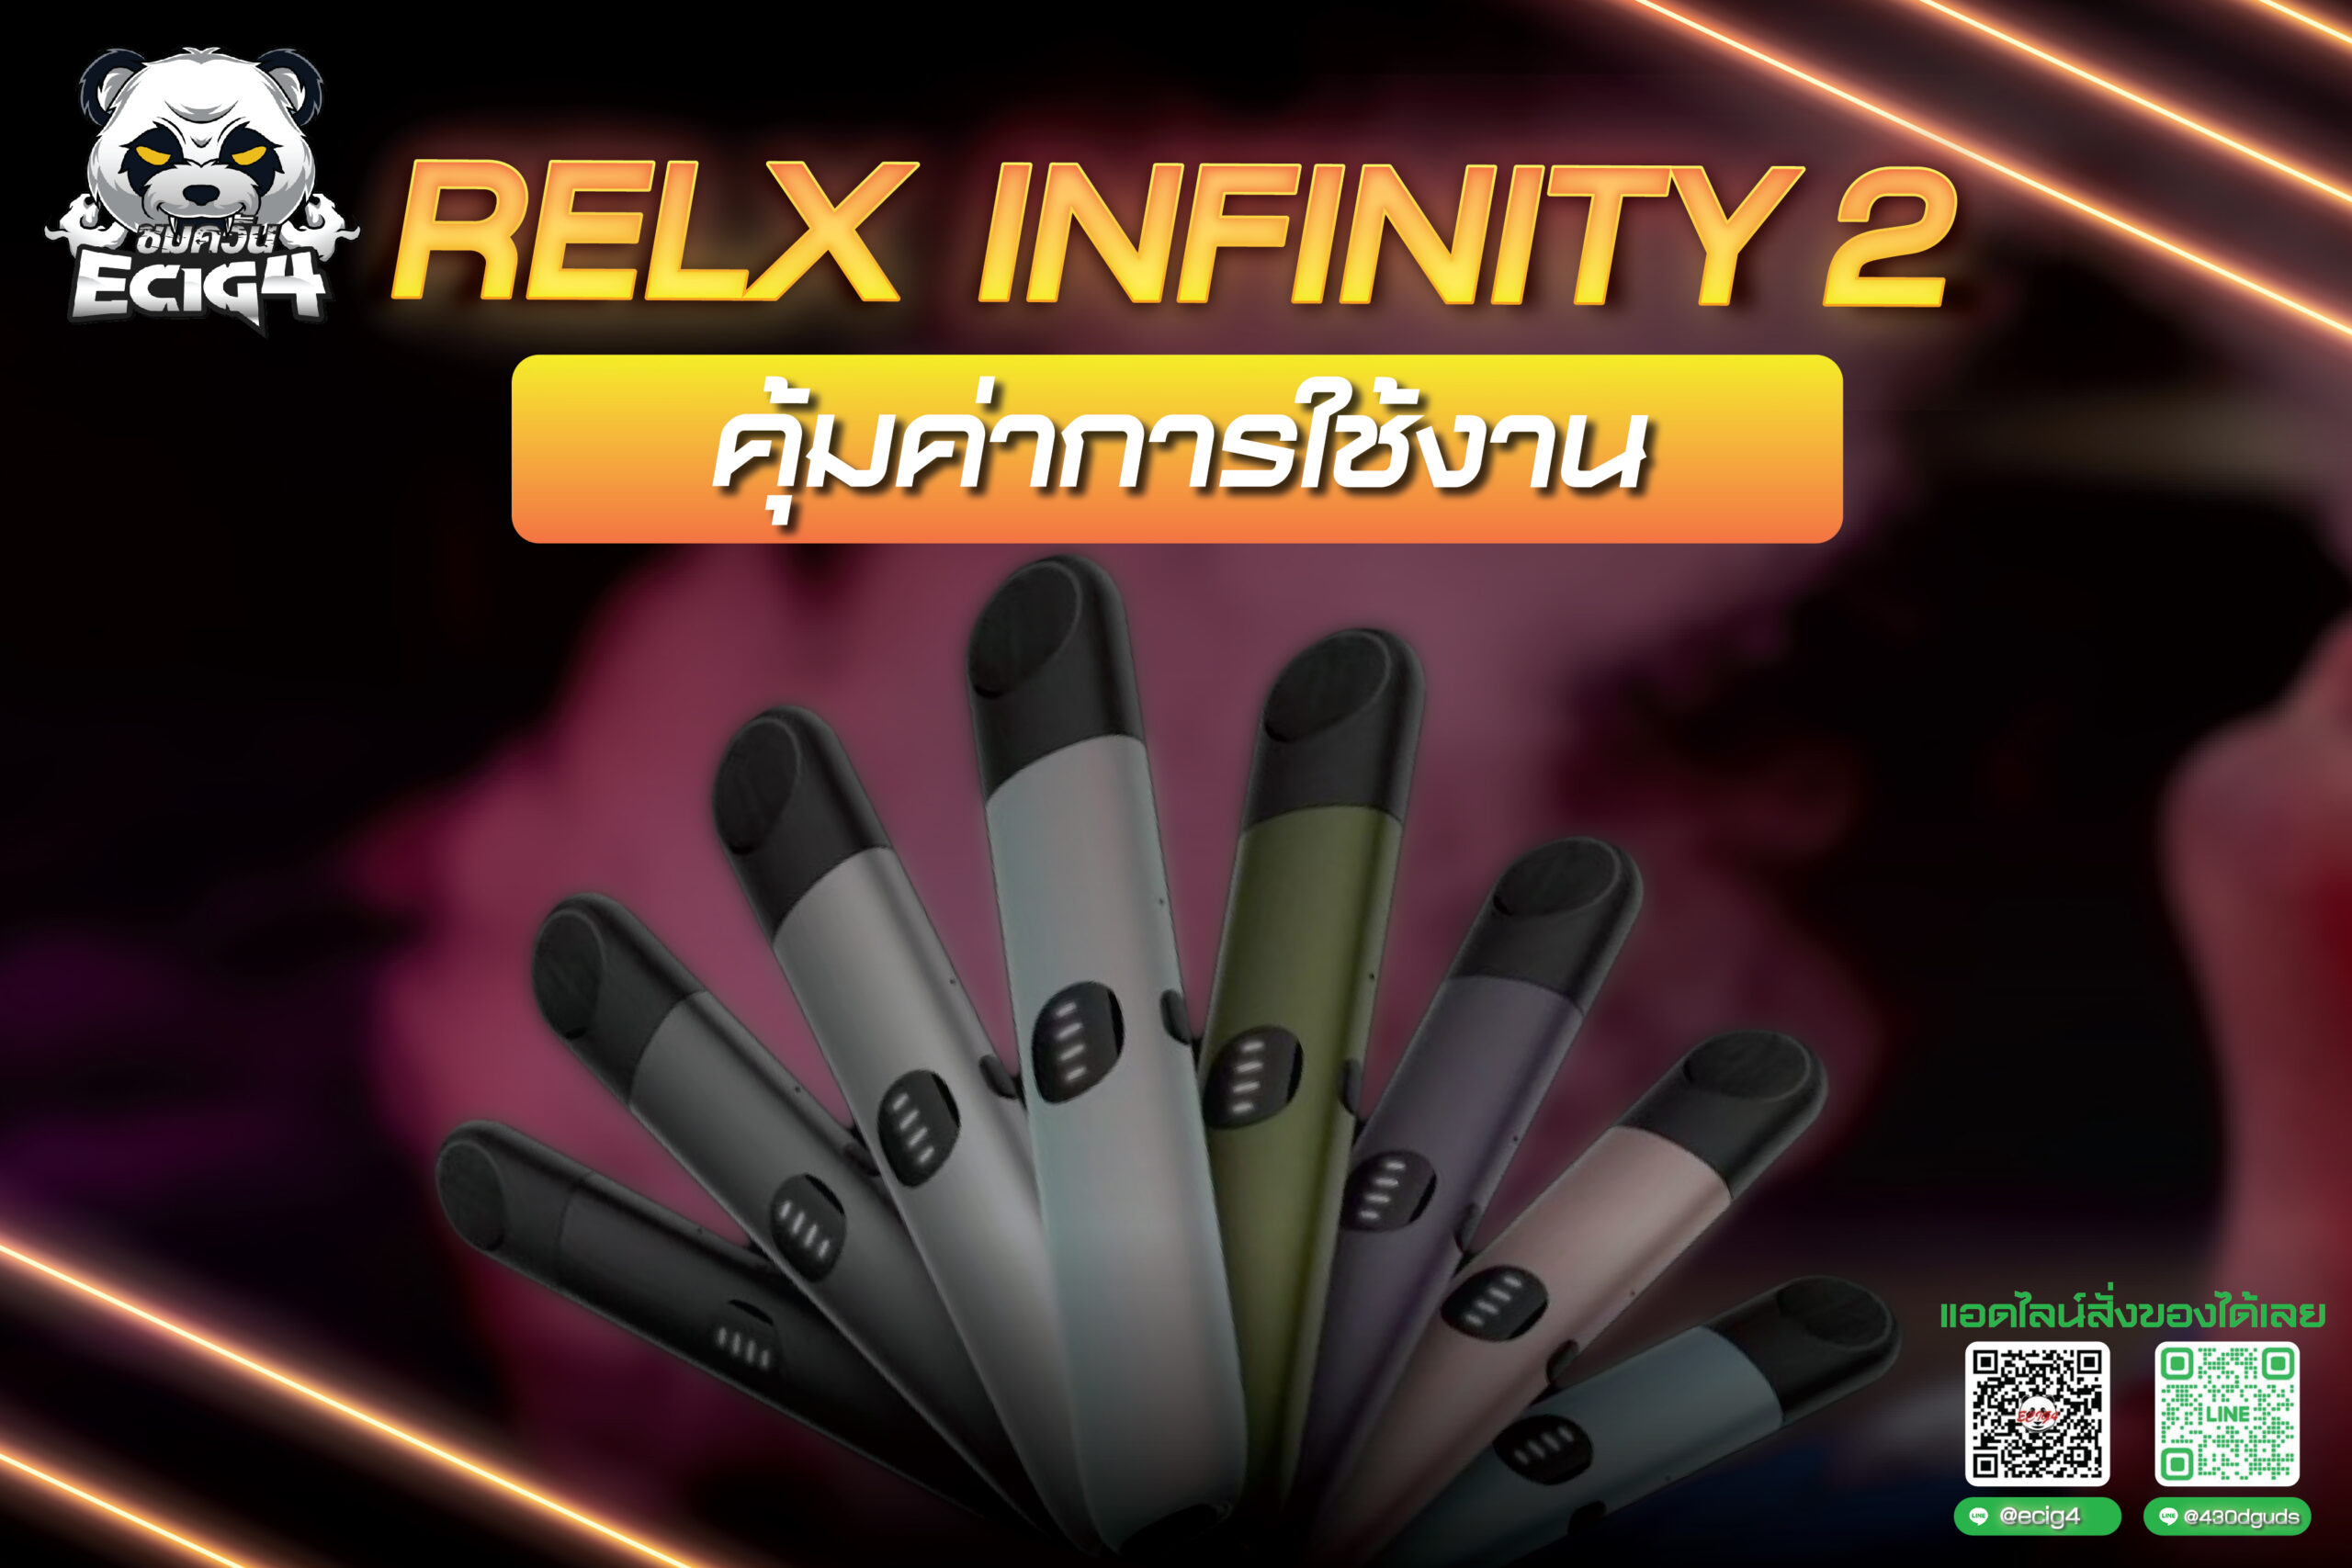 Relx Infinity 2  คุ้มค่าการใช้งาน